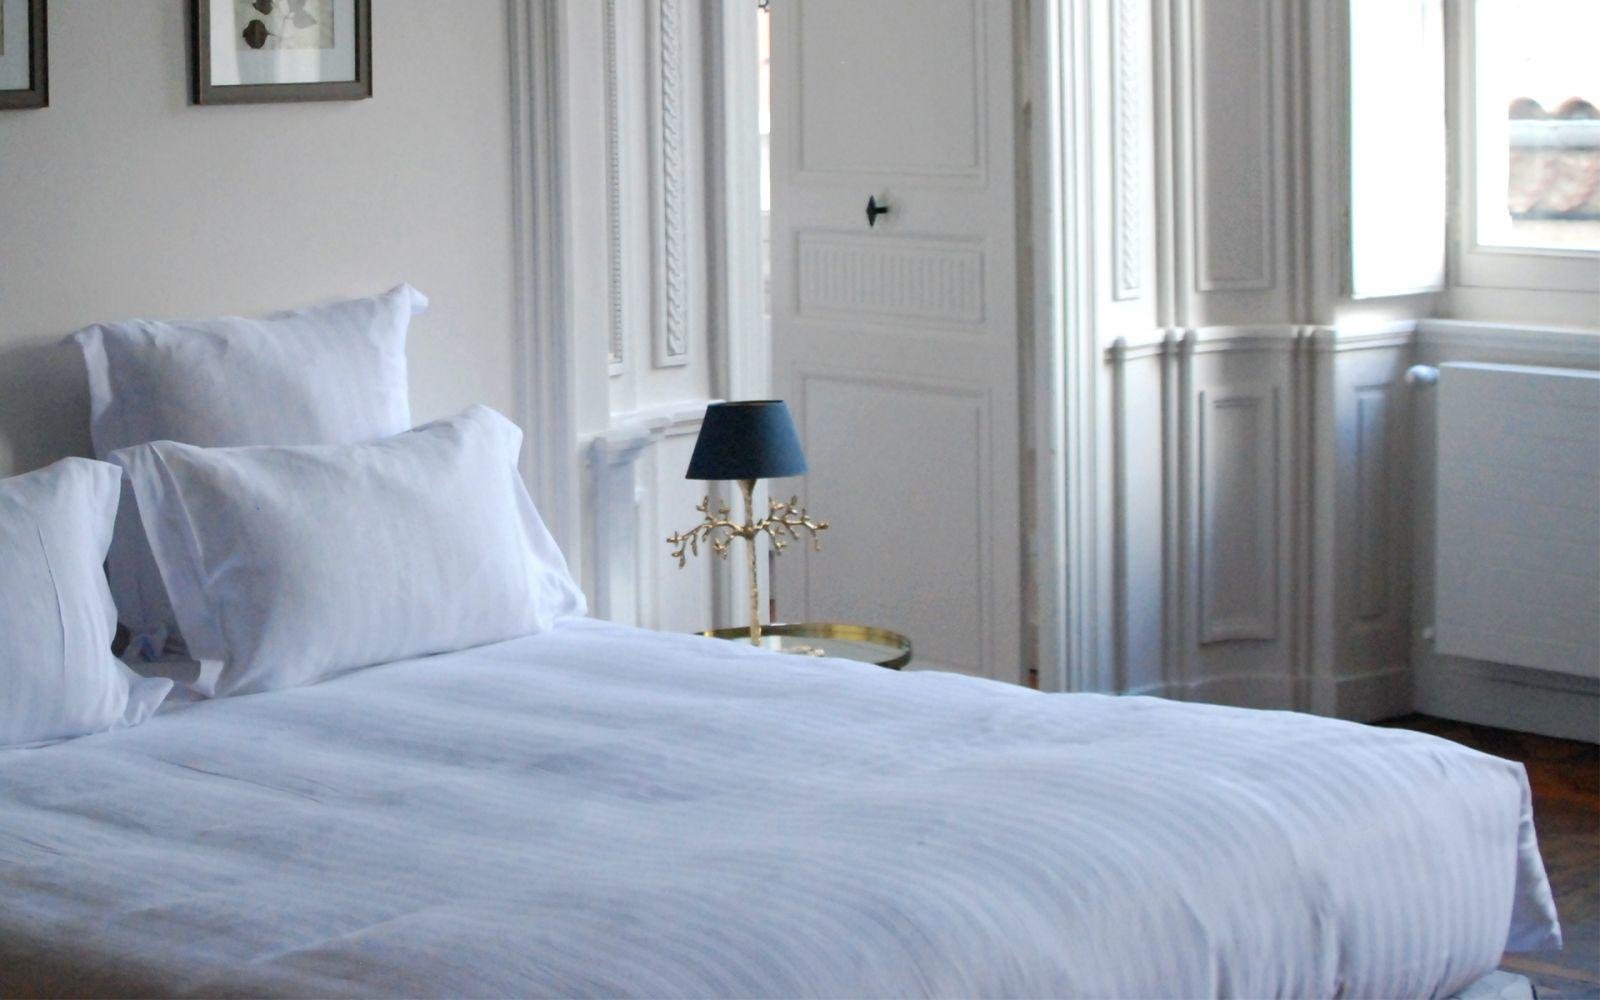 Hôtel de la Villeon | La Villeon suite | bed